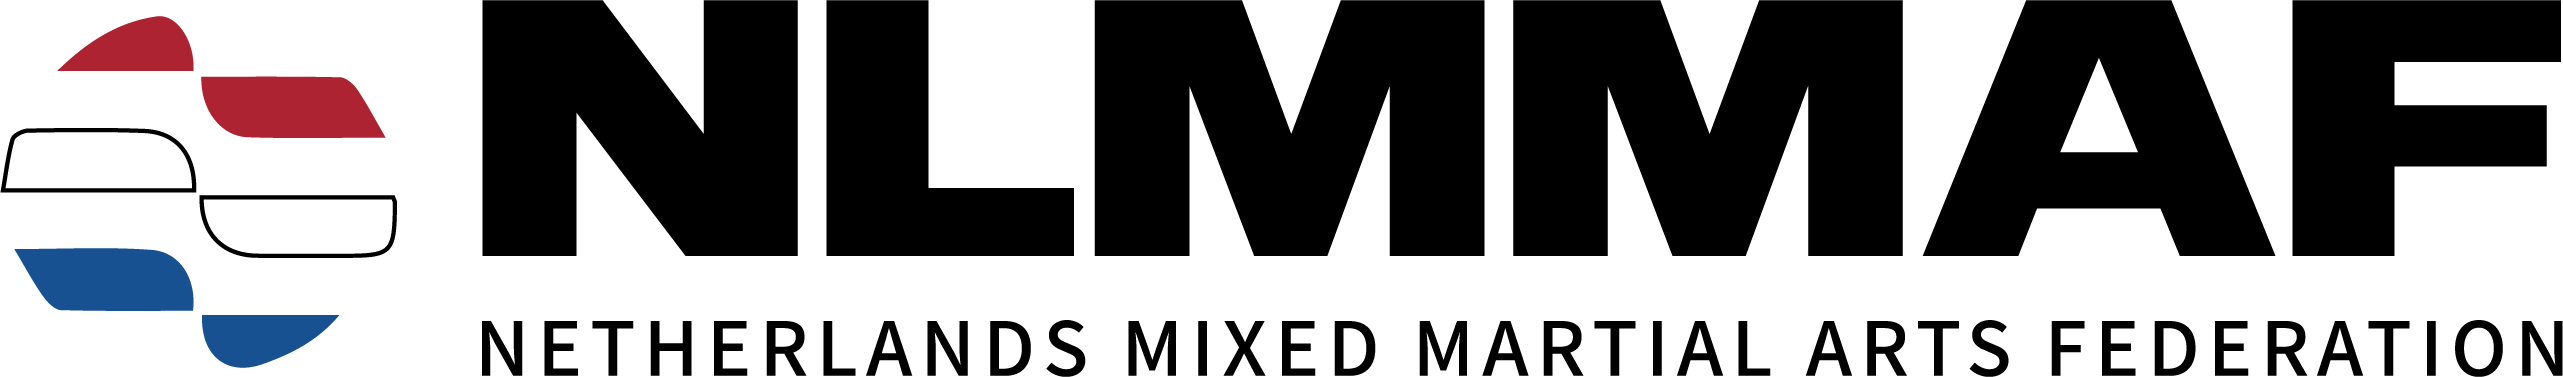 nlmmaf-logo-zwart